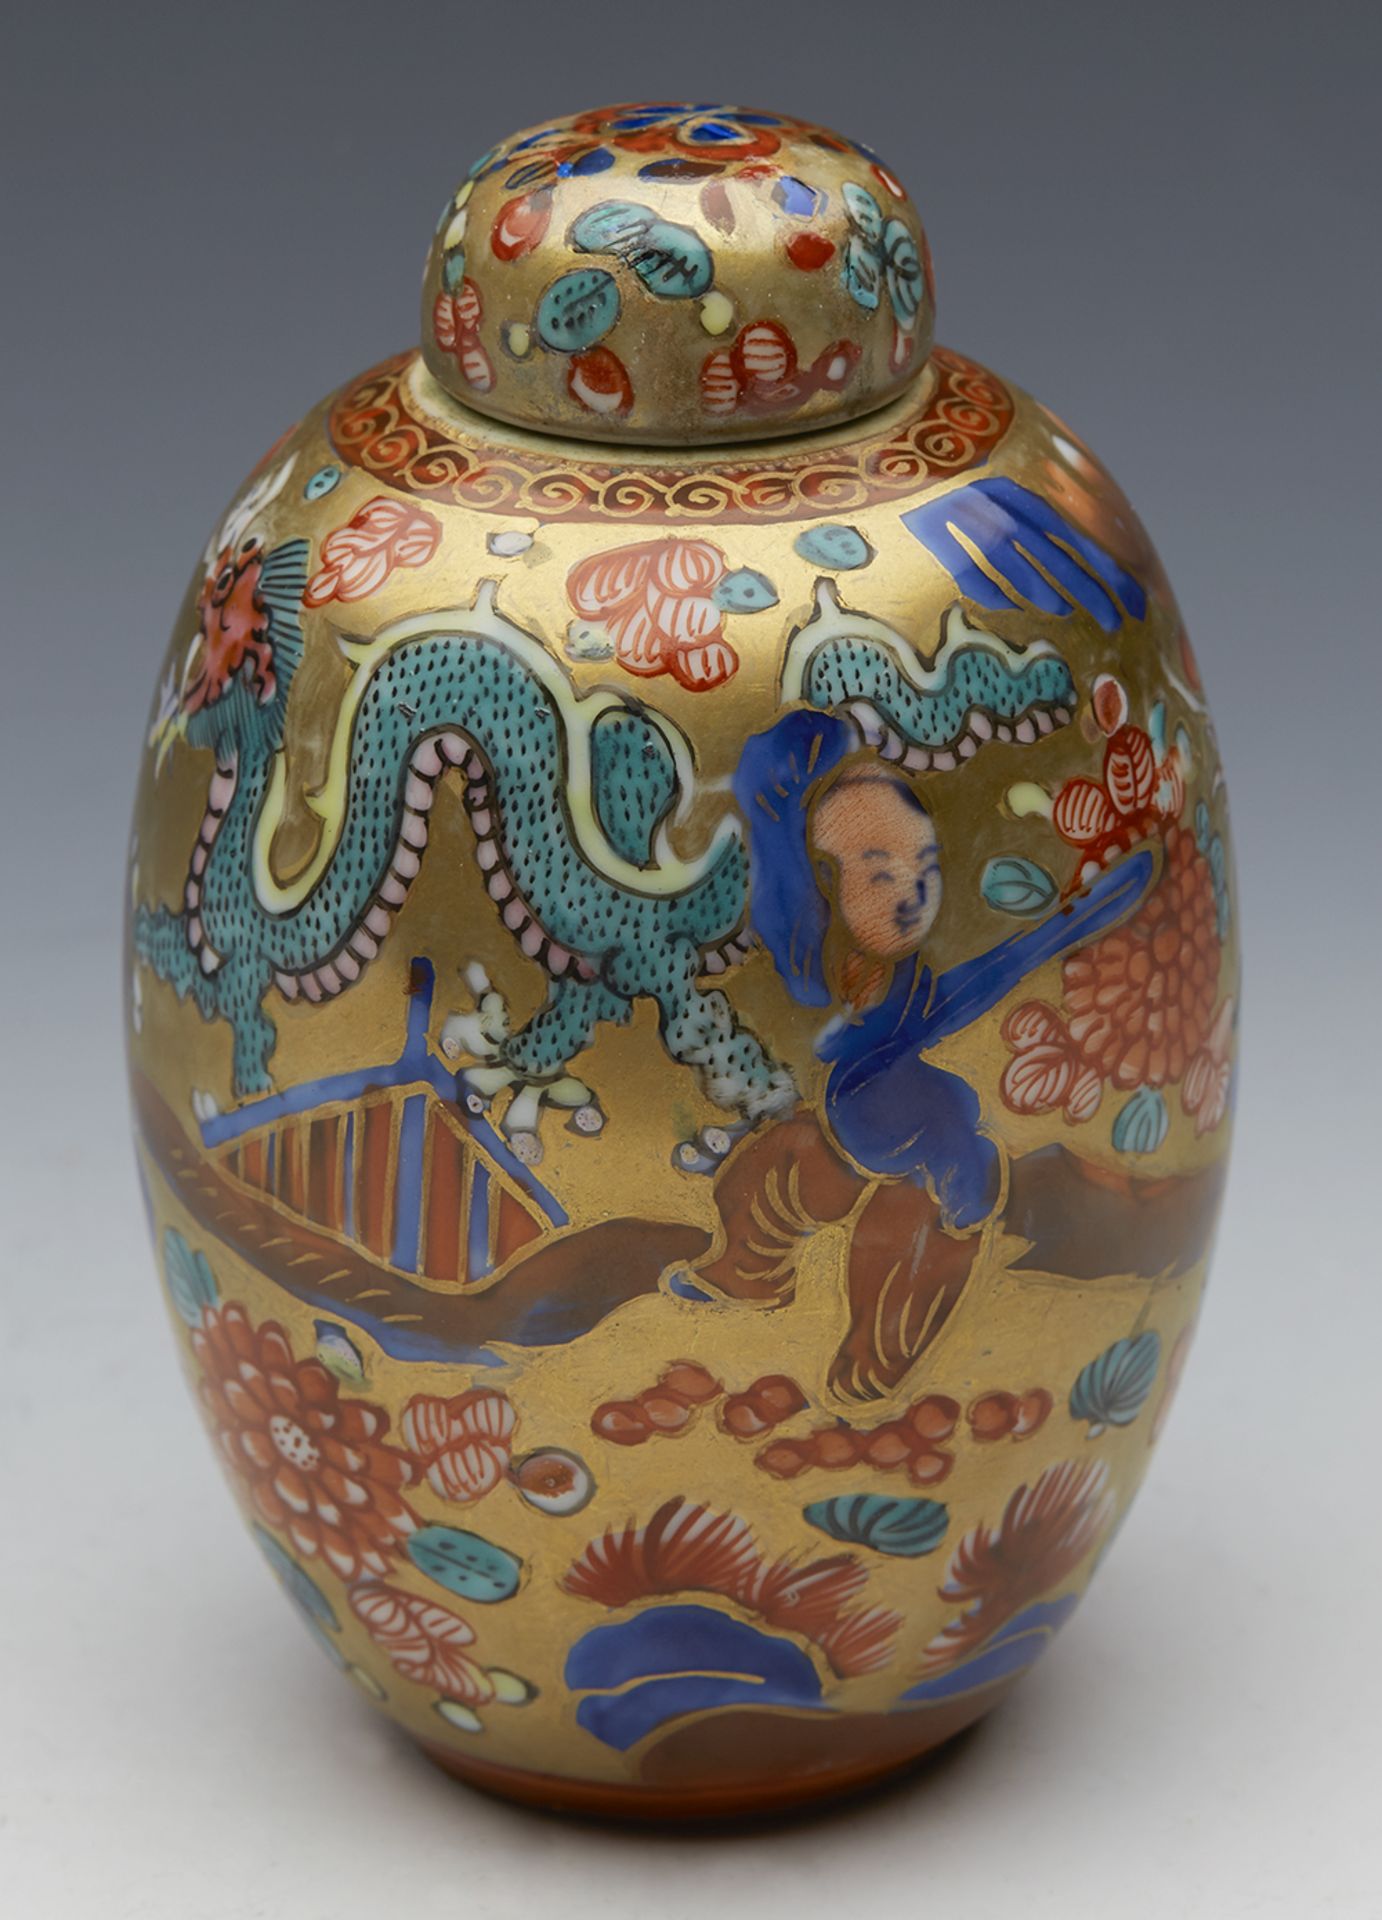 Antique Kangxi Chinese Lidded Jar C.1662 - 1722